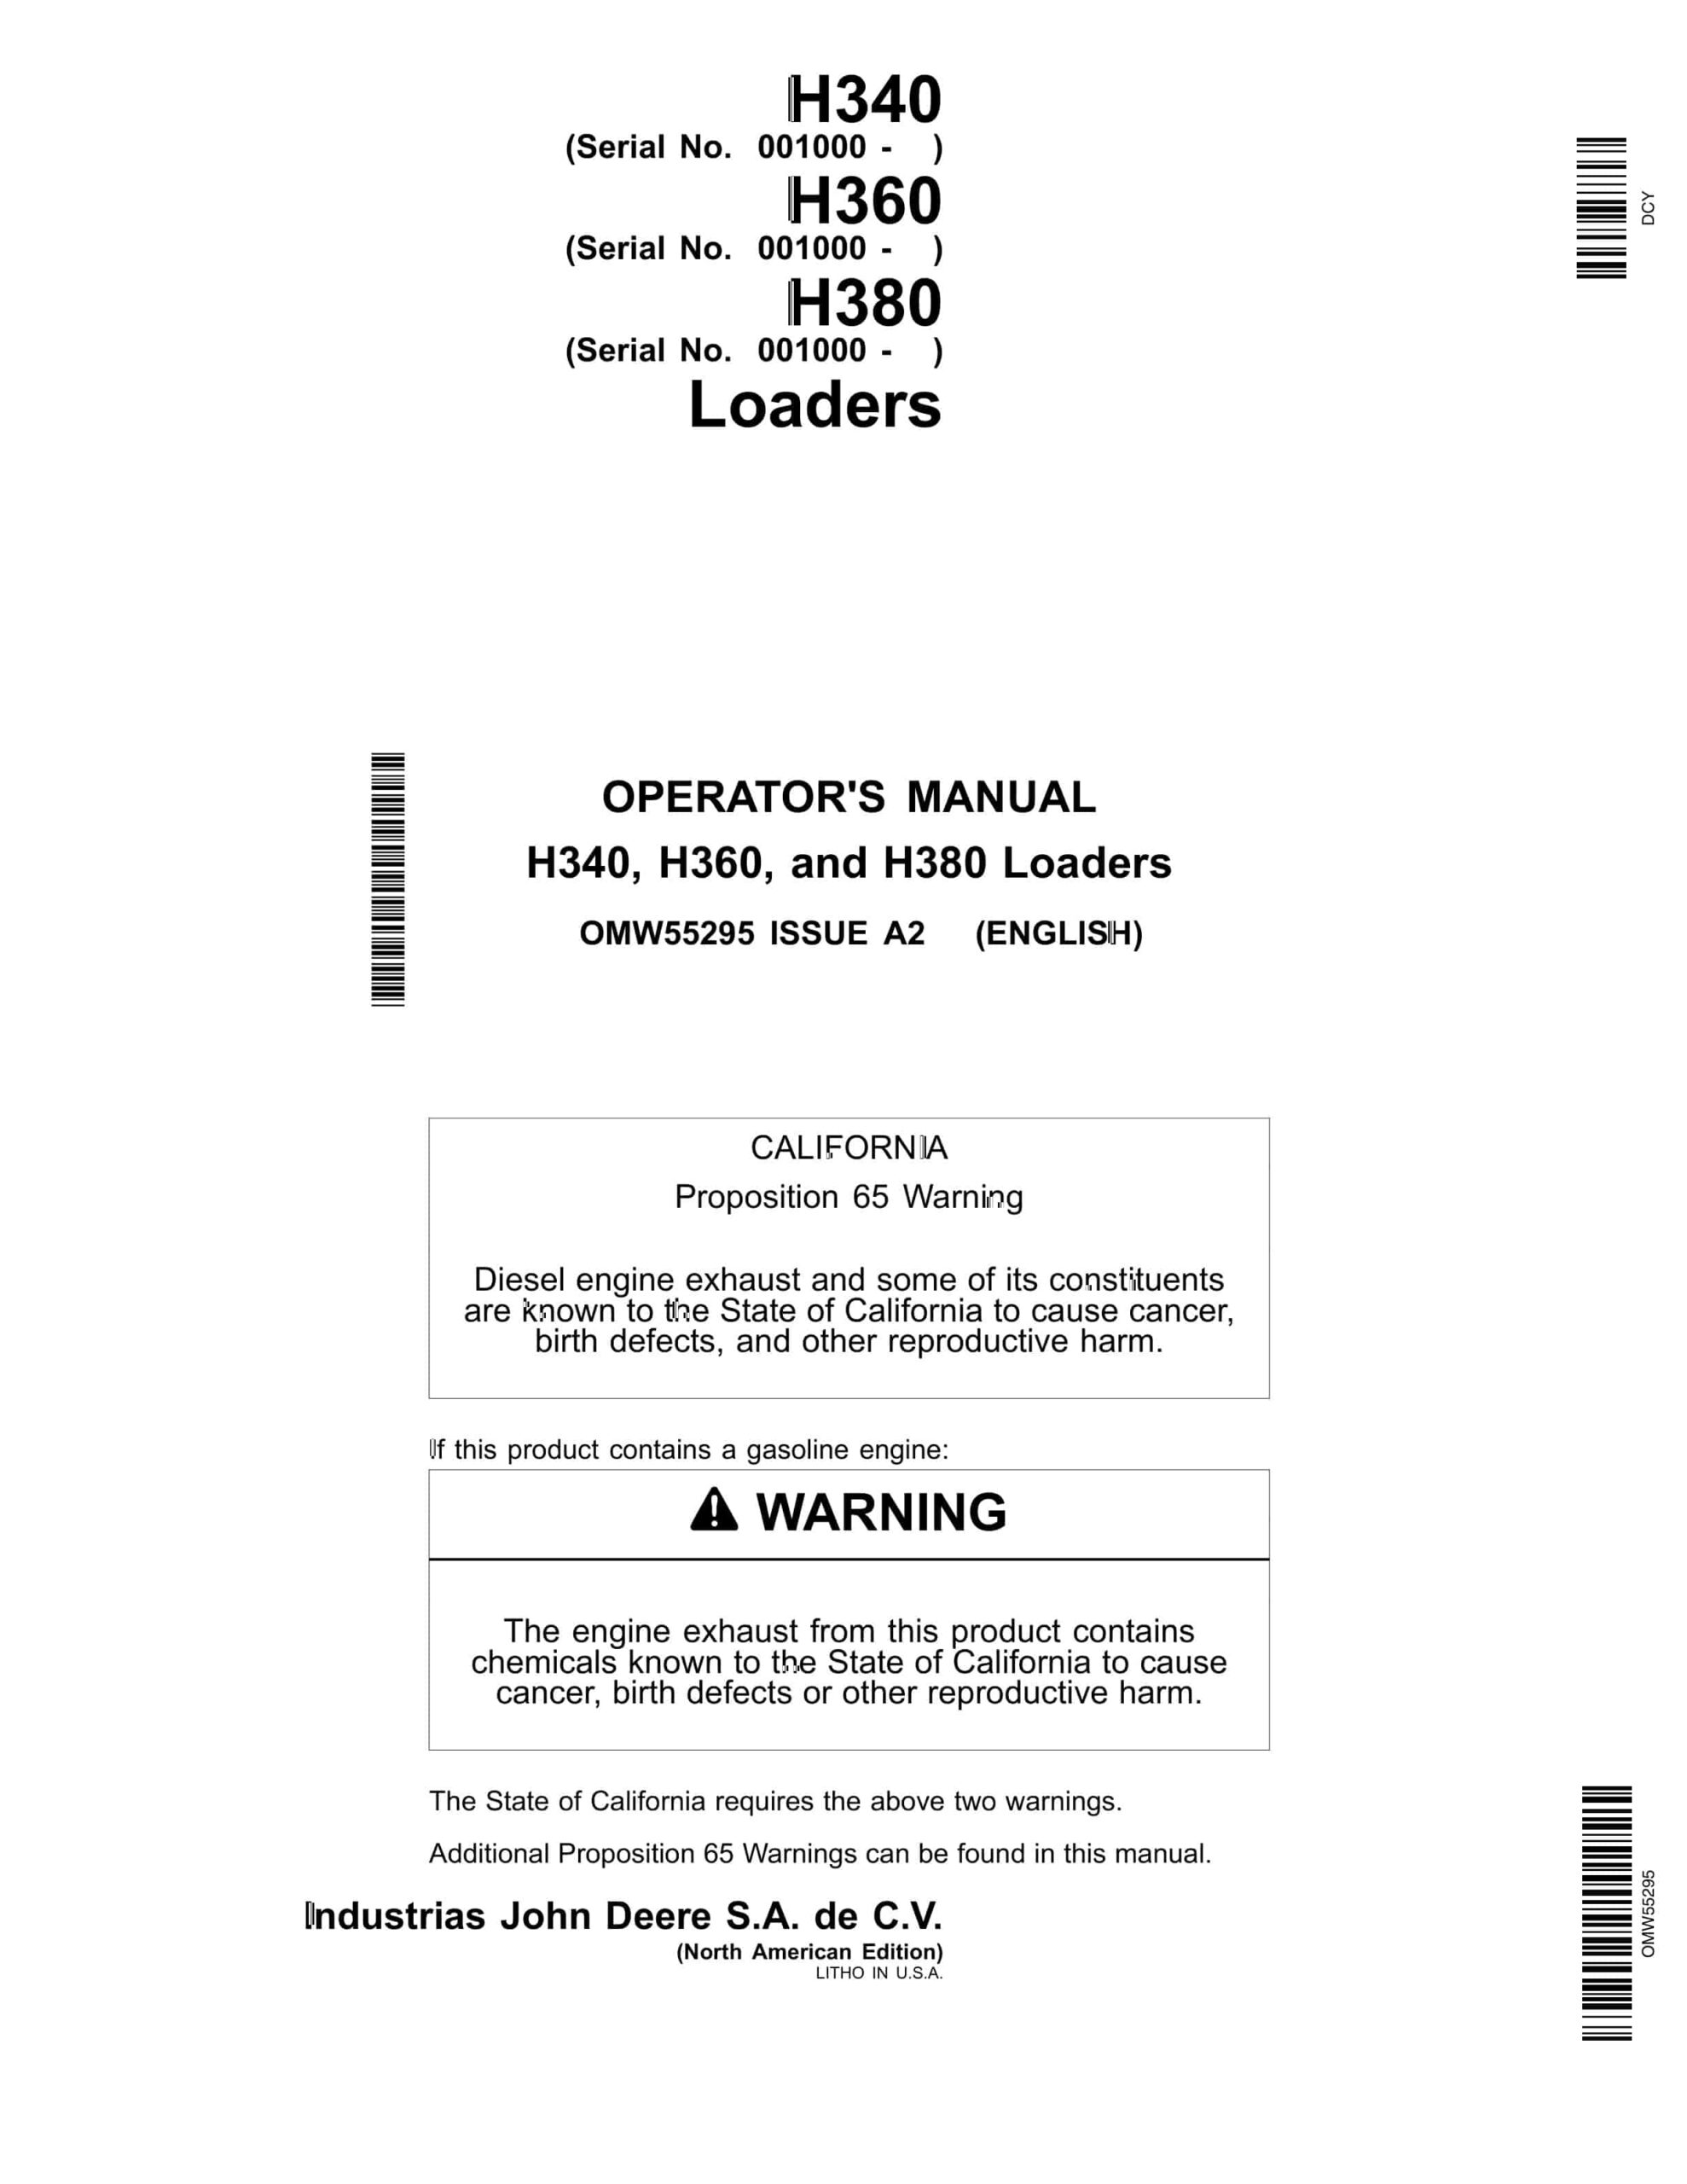 John Deere H340, H360, and H380 Loader Operator Manual OMW55295-1